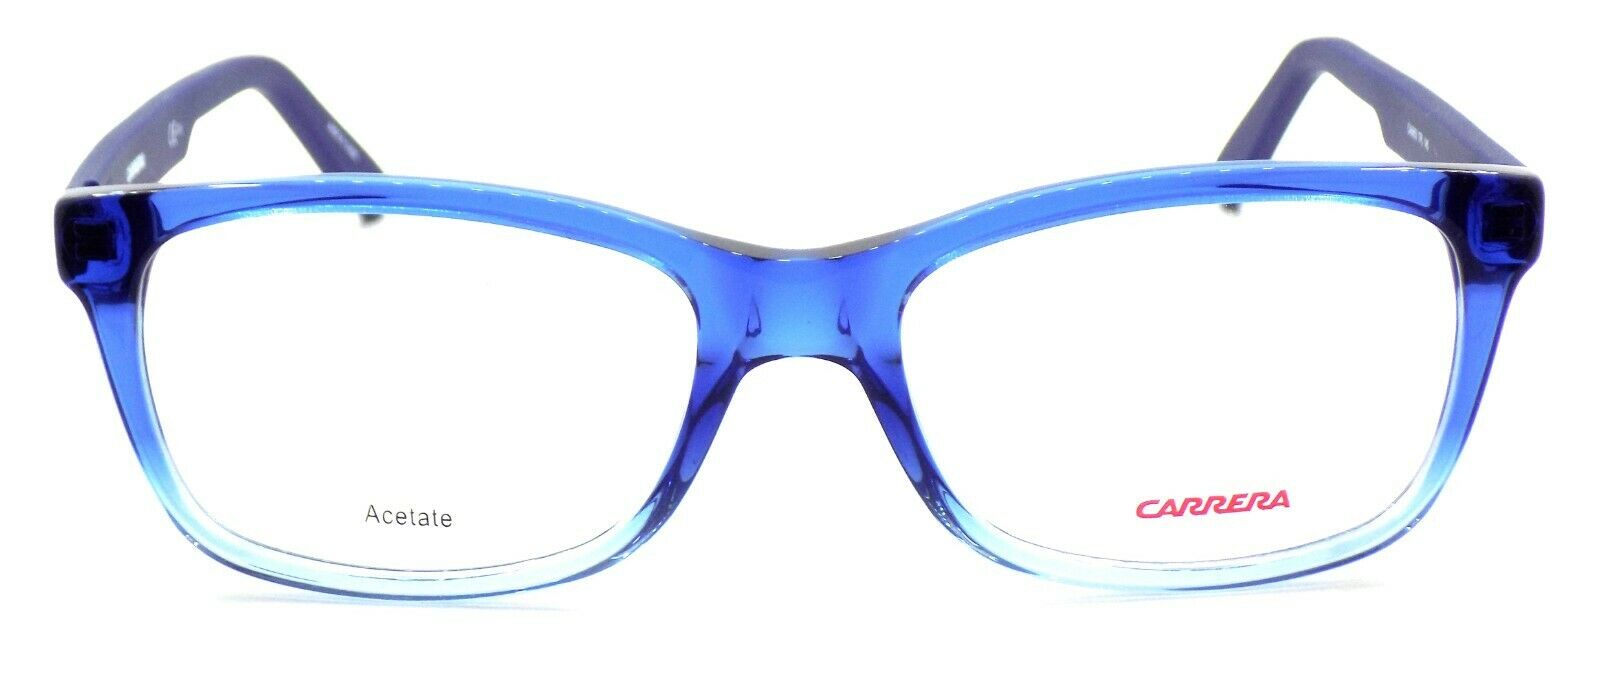 2-Carrera CA6653 TPL Unisex Eyeglasses Frames 54-18-145 Shaded Blue + CASE-827886093694-IKSpecs